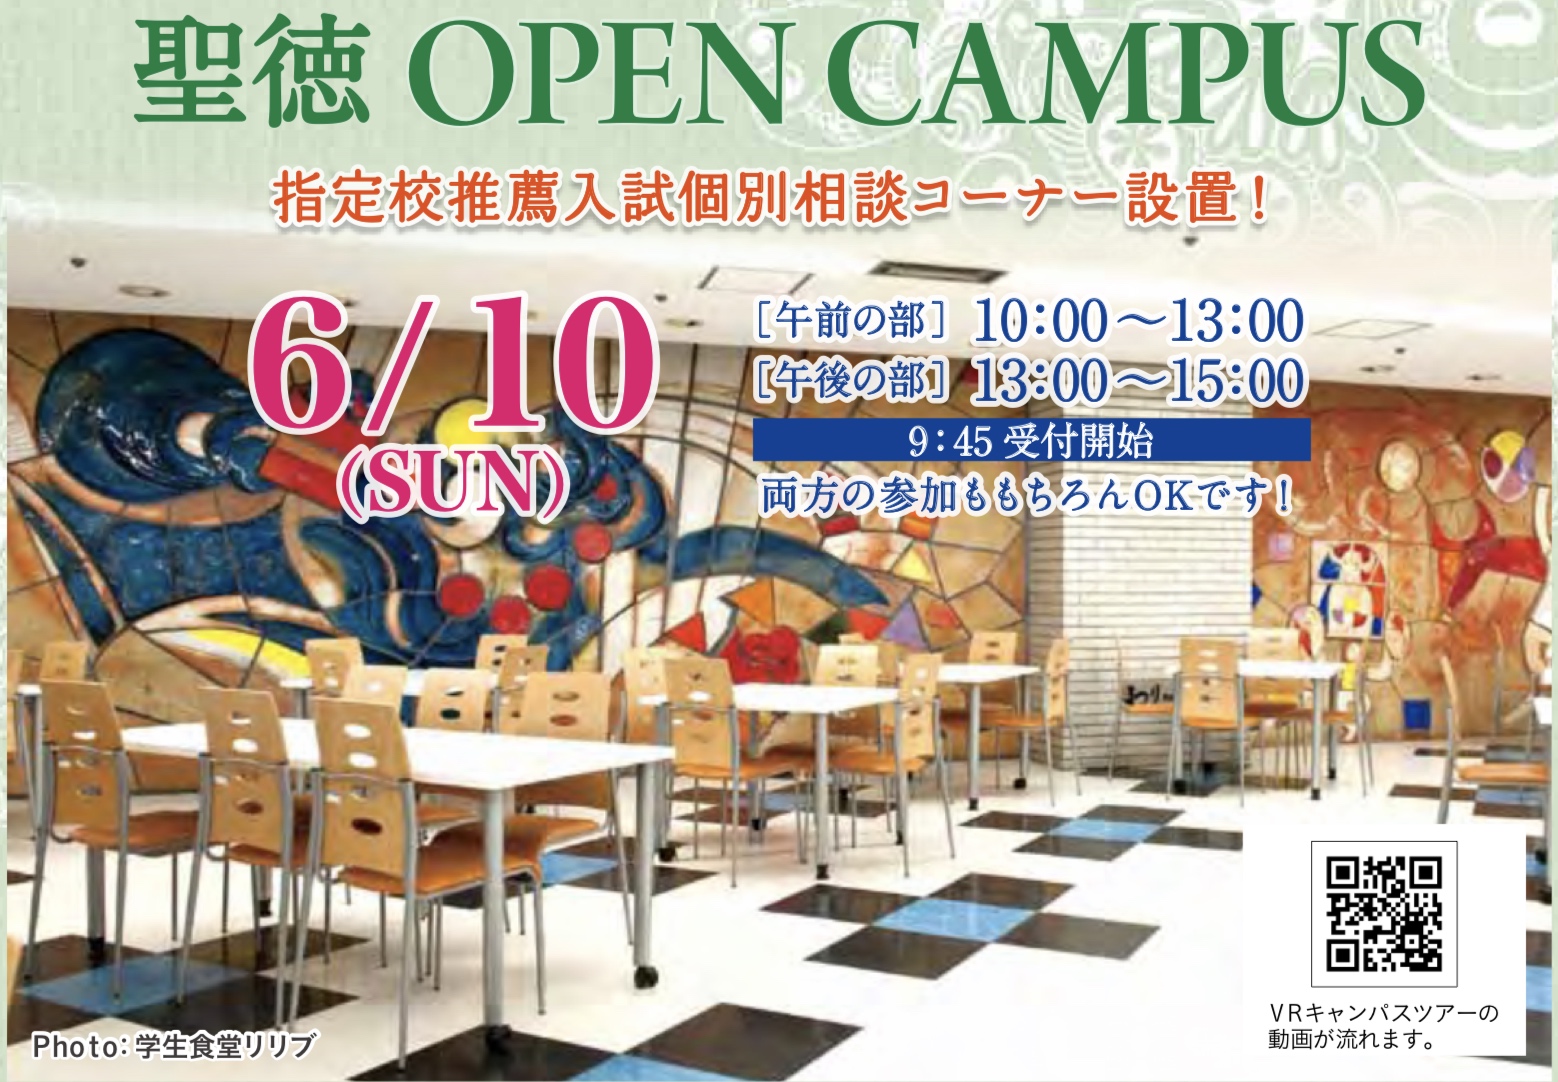 6月10日にオープンキャンパスが開催されます。